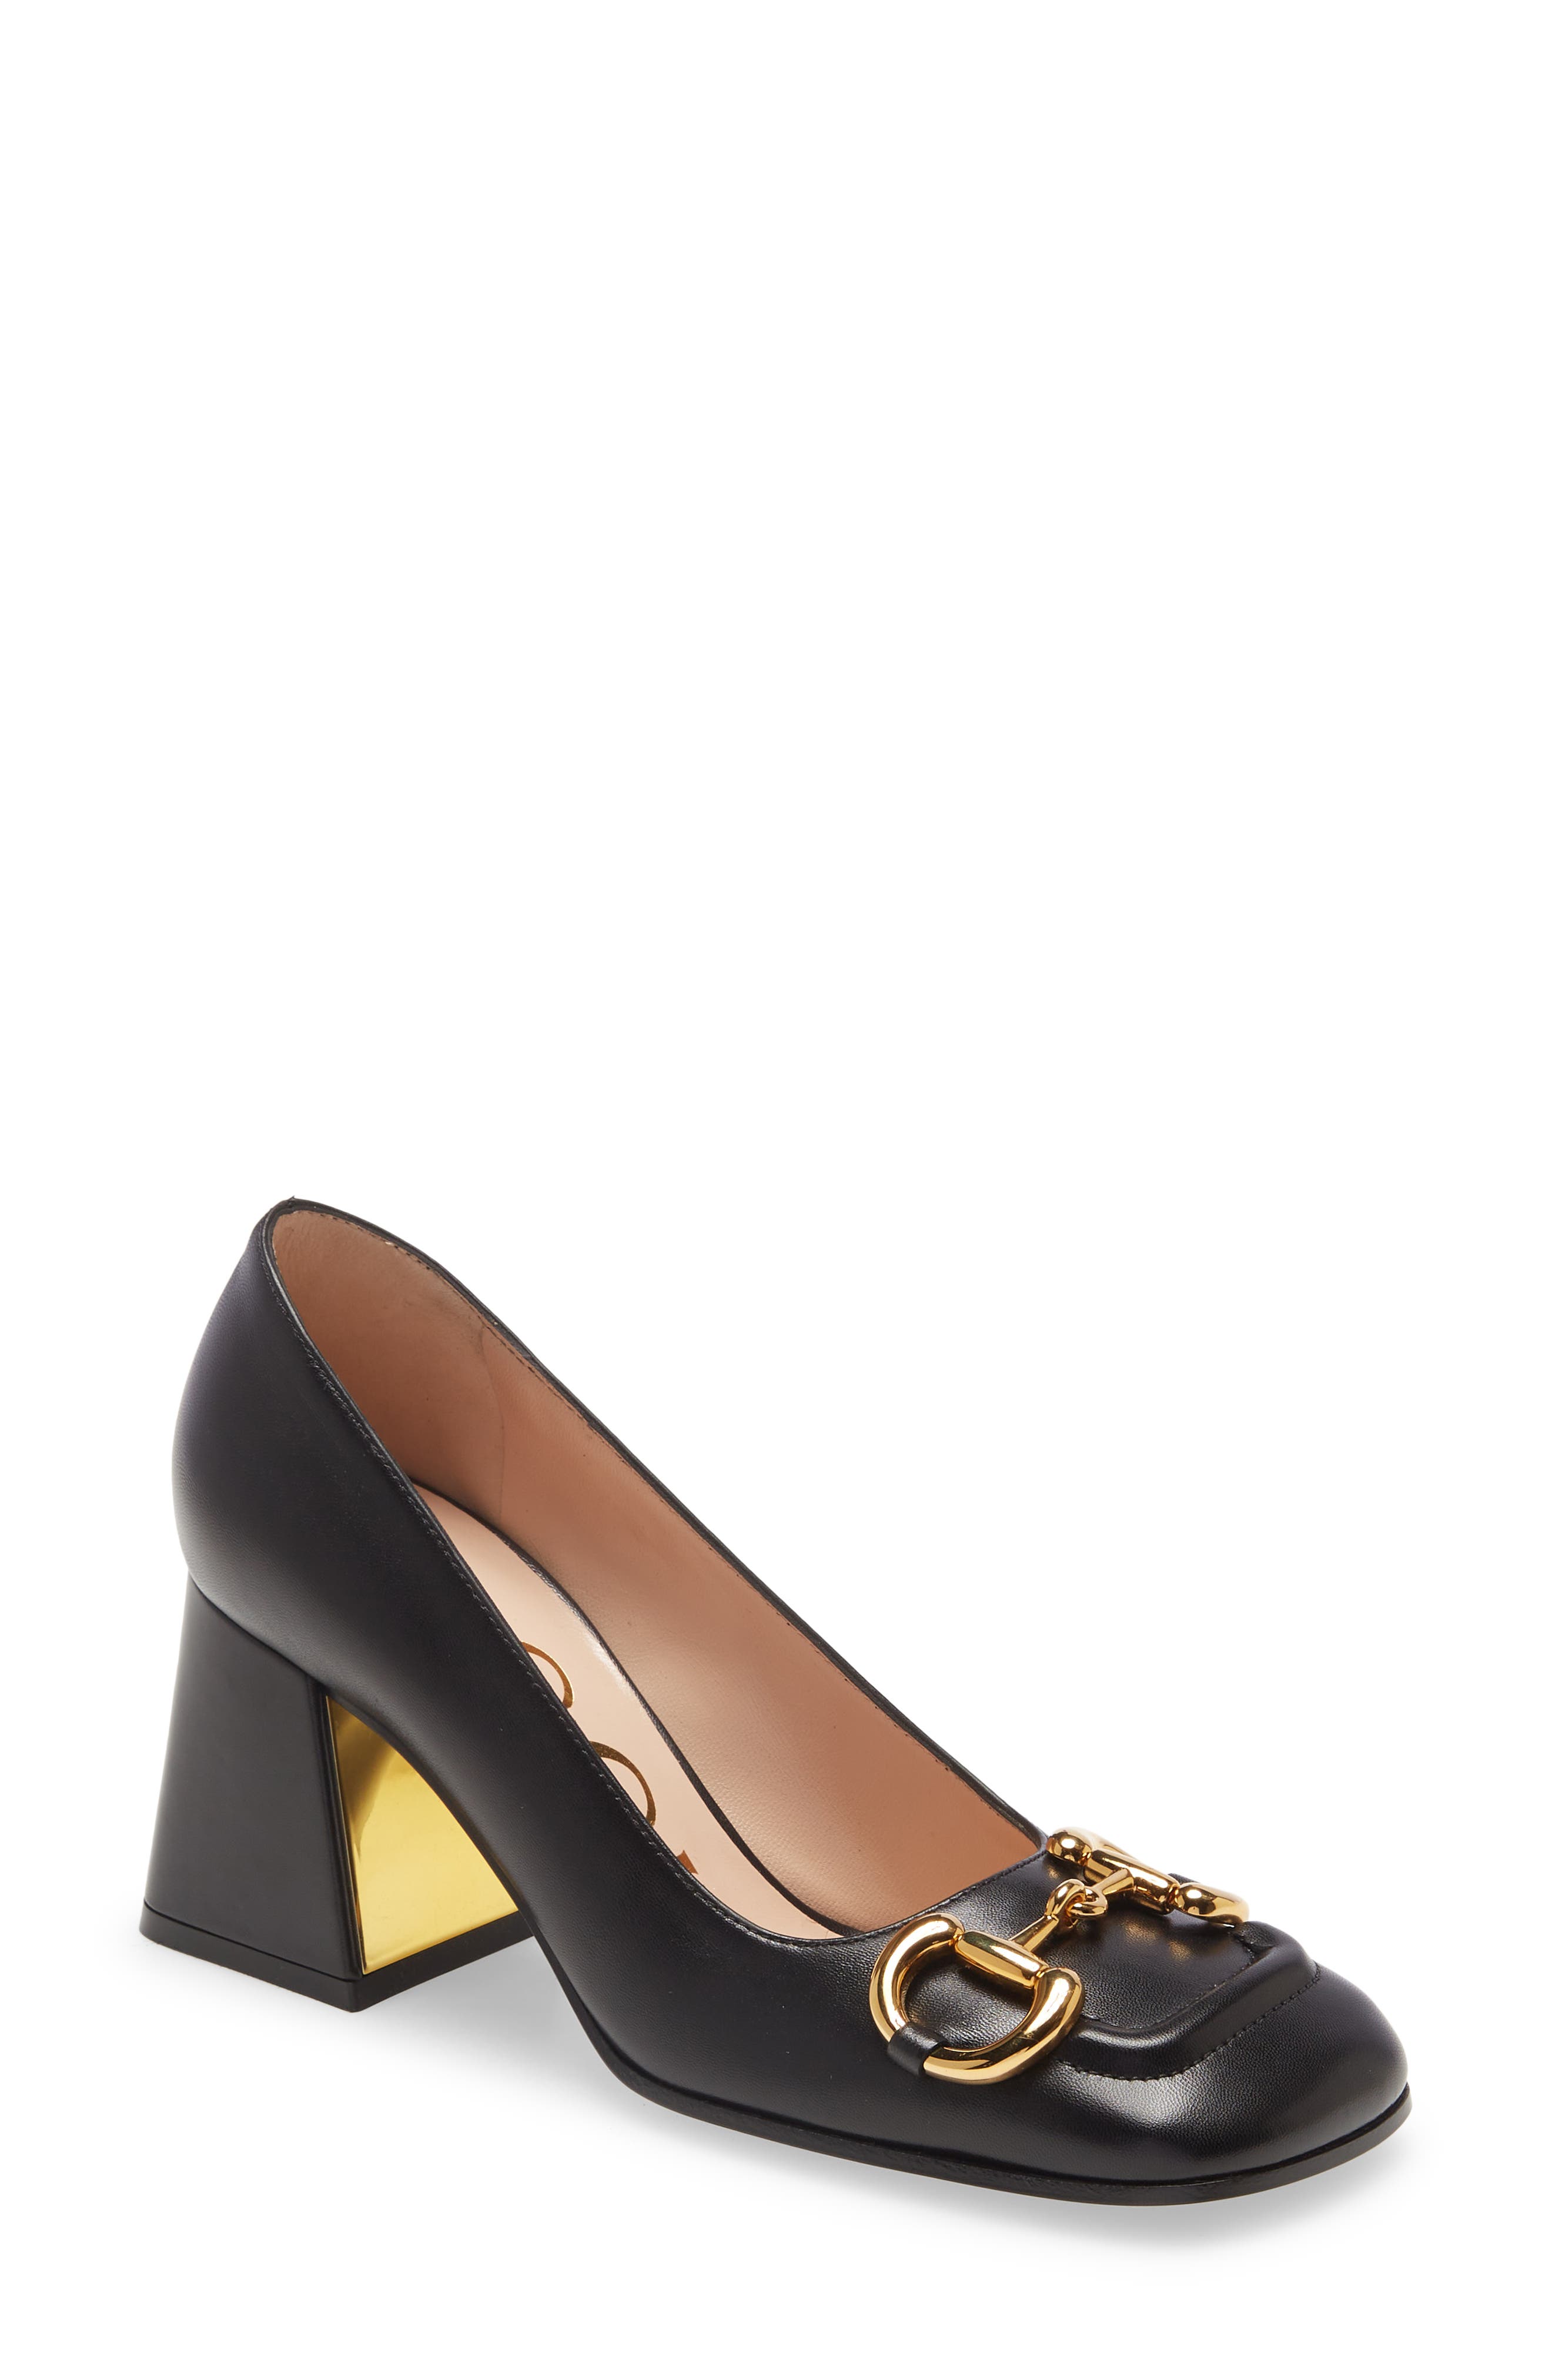 Shoes Pumps High Heels La Strada High Heels black-gold-colored casual look 